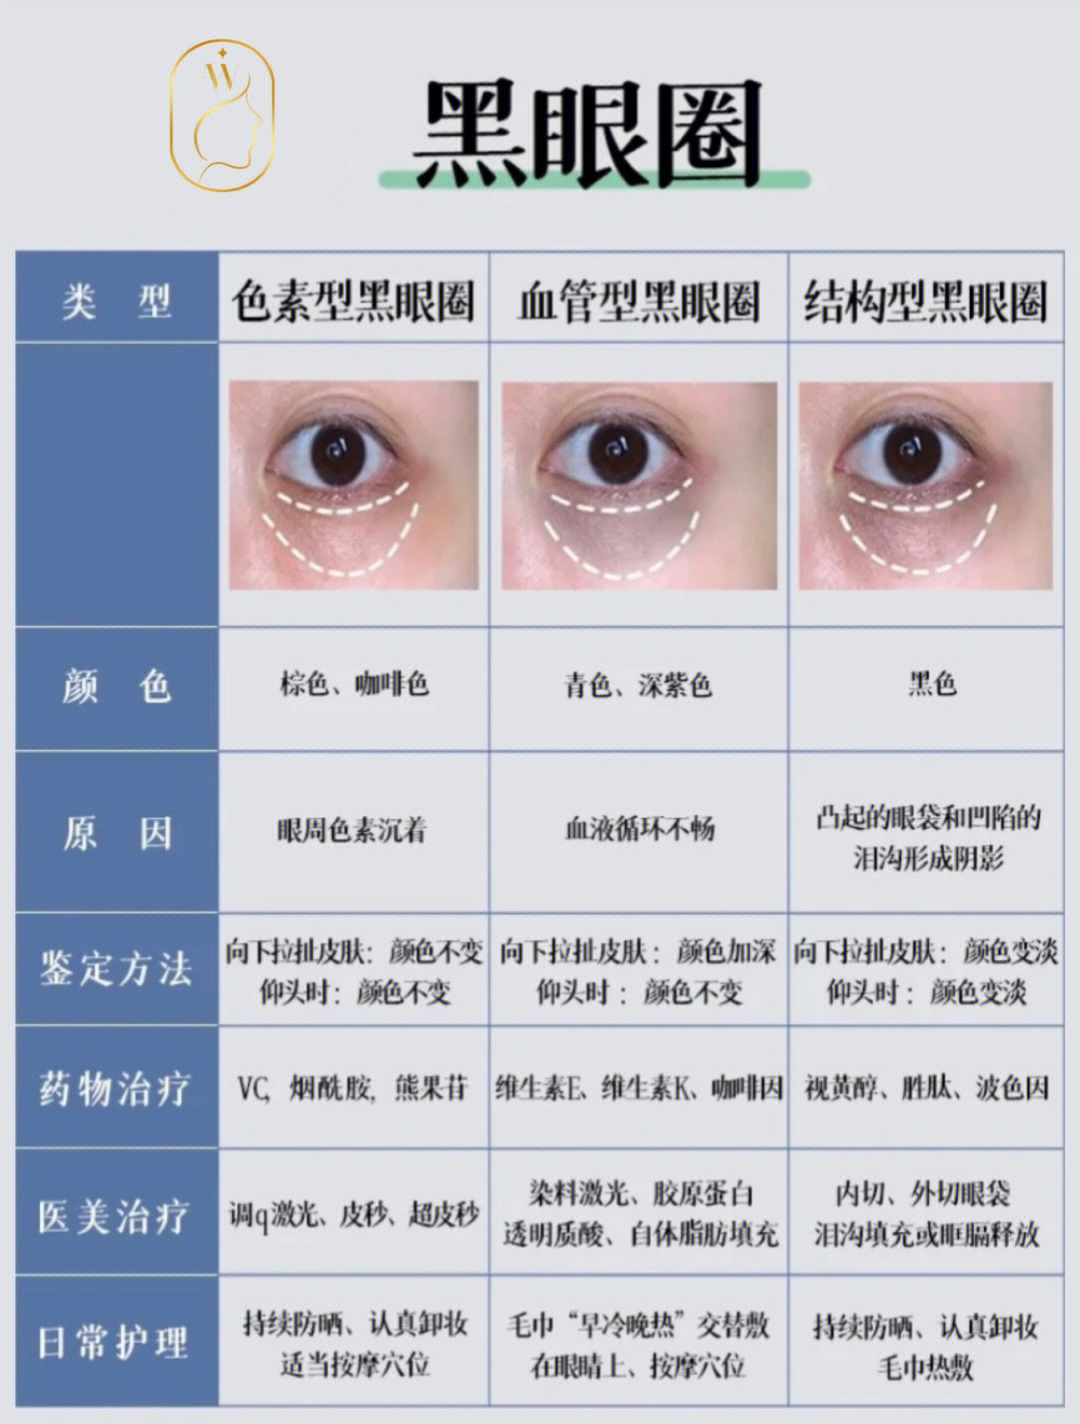 黑眼圈类型对照图图片